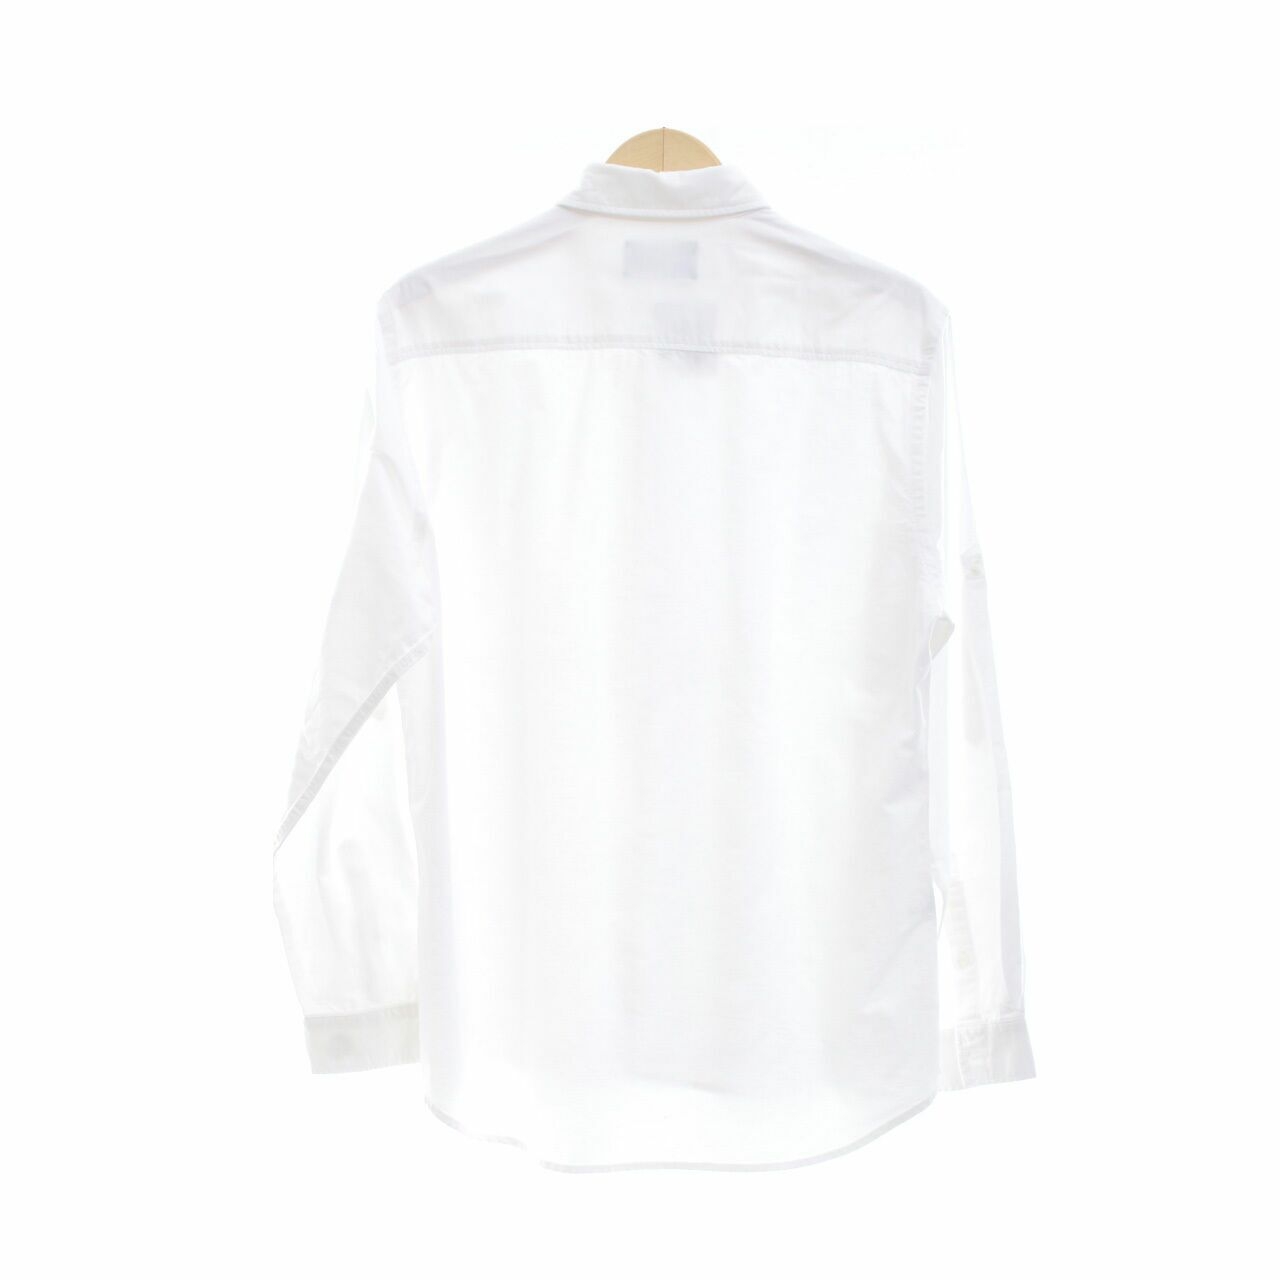 Valino White Shirt